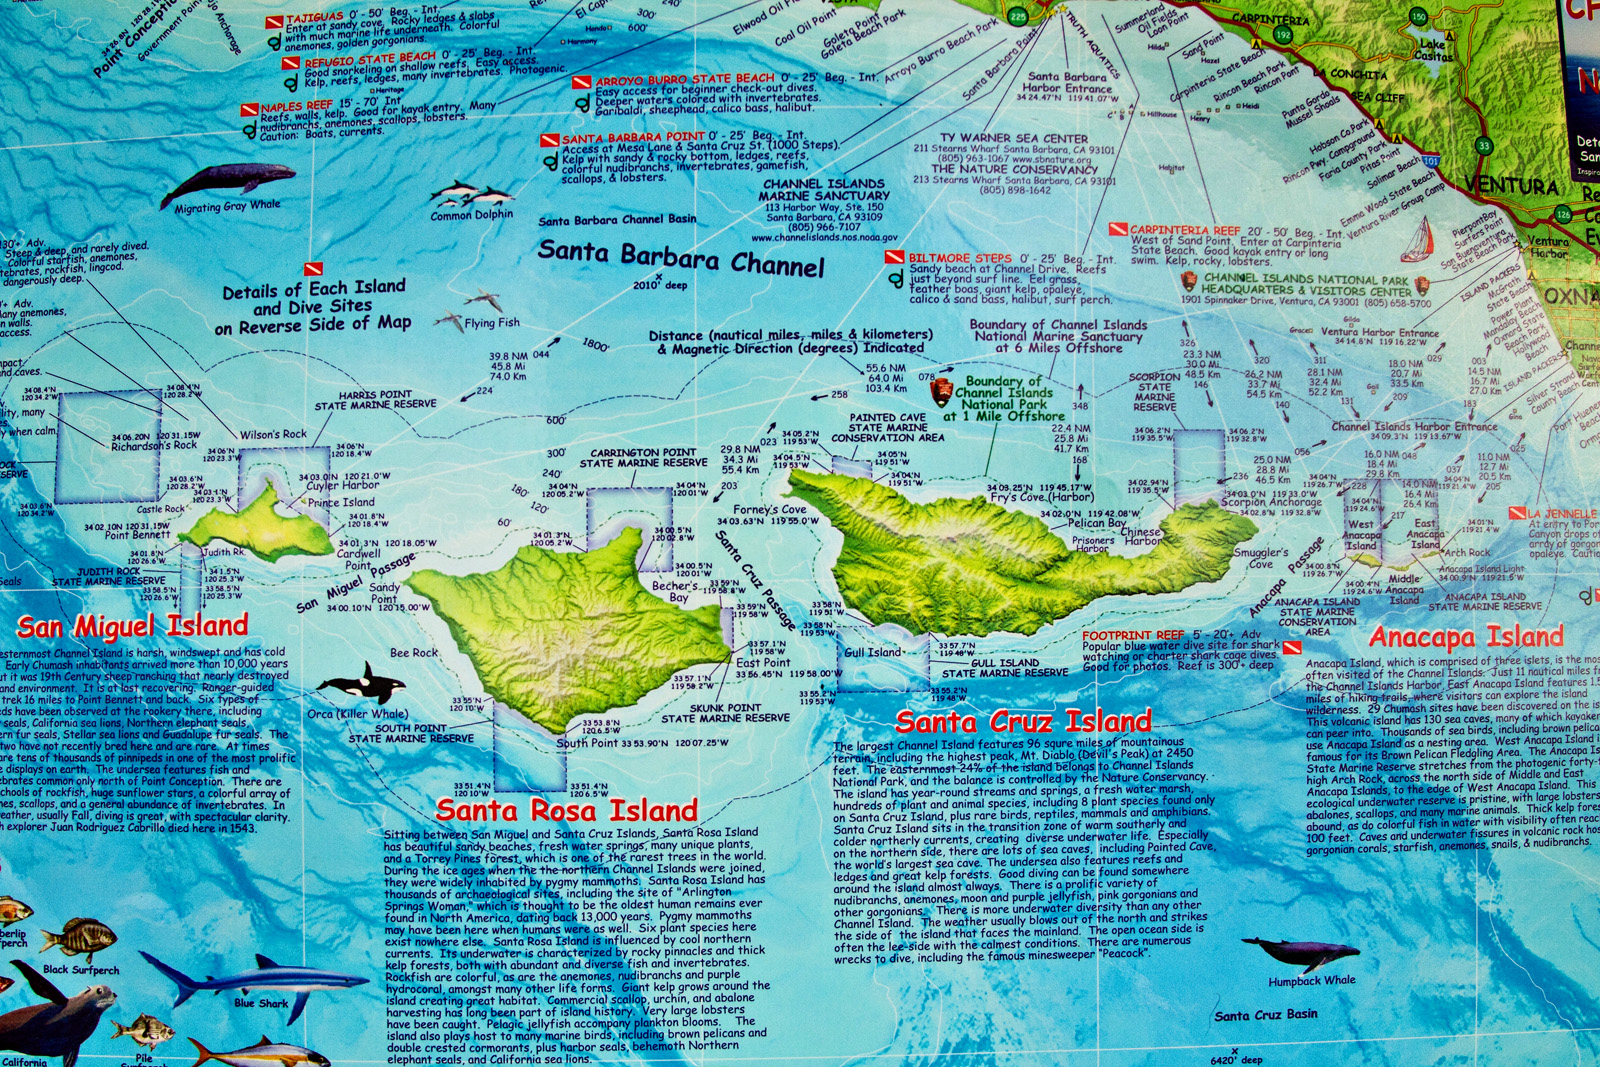 And island which parts. The channel Islands на карте. Остров Калифорния на карте. Карта Айленд.